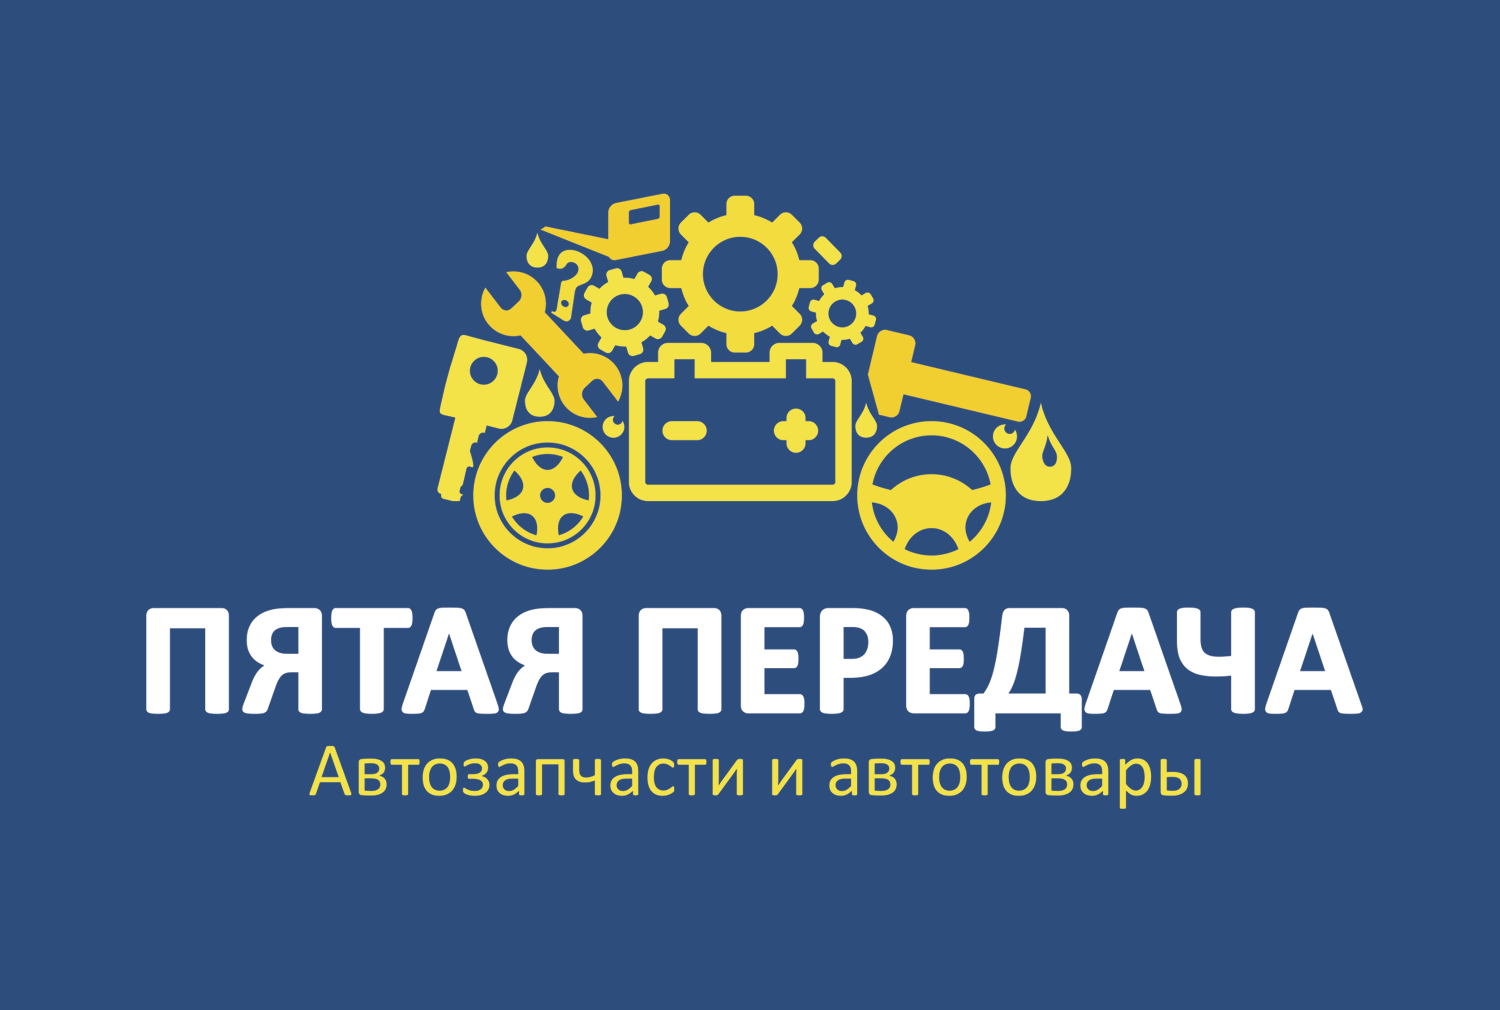 Интернет-магазин автозапчастей Пятая передача Железногорск - Город Железногорск